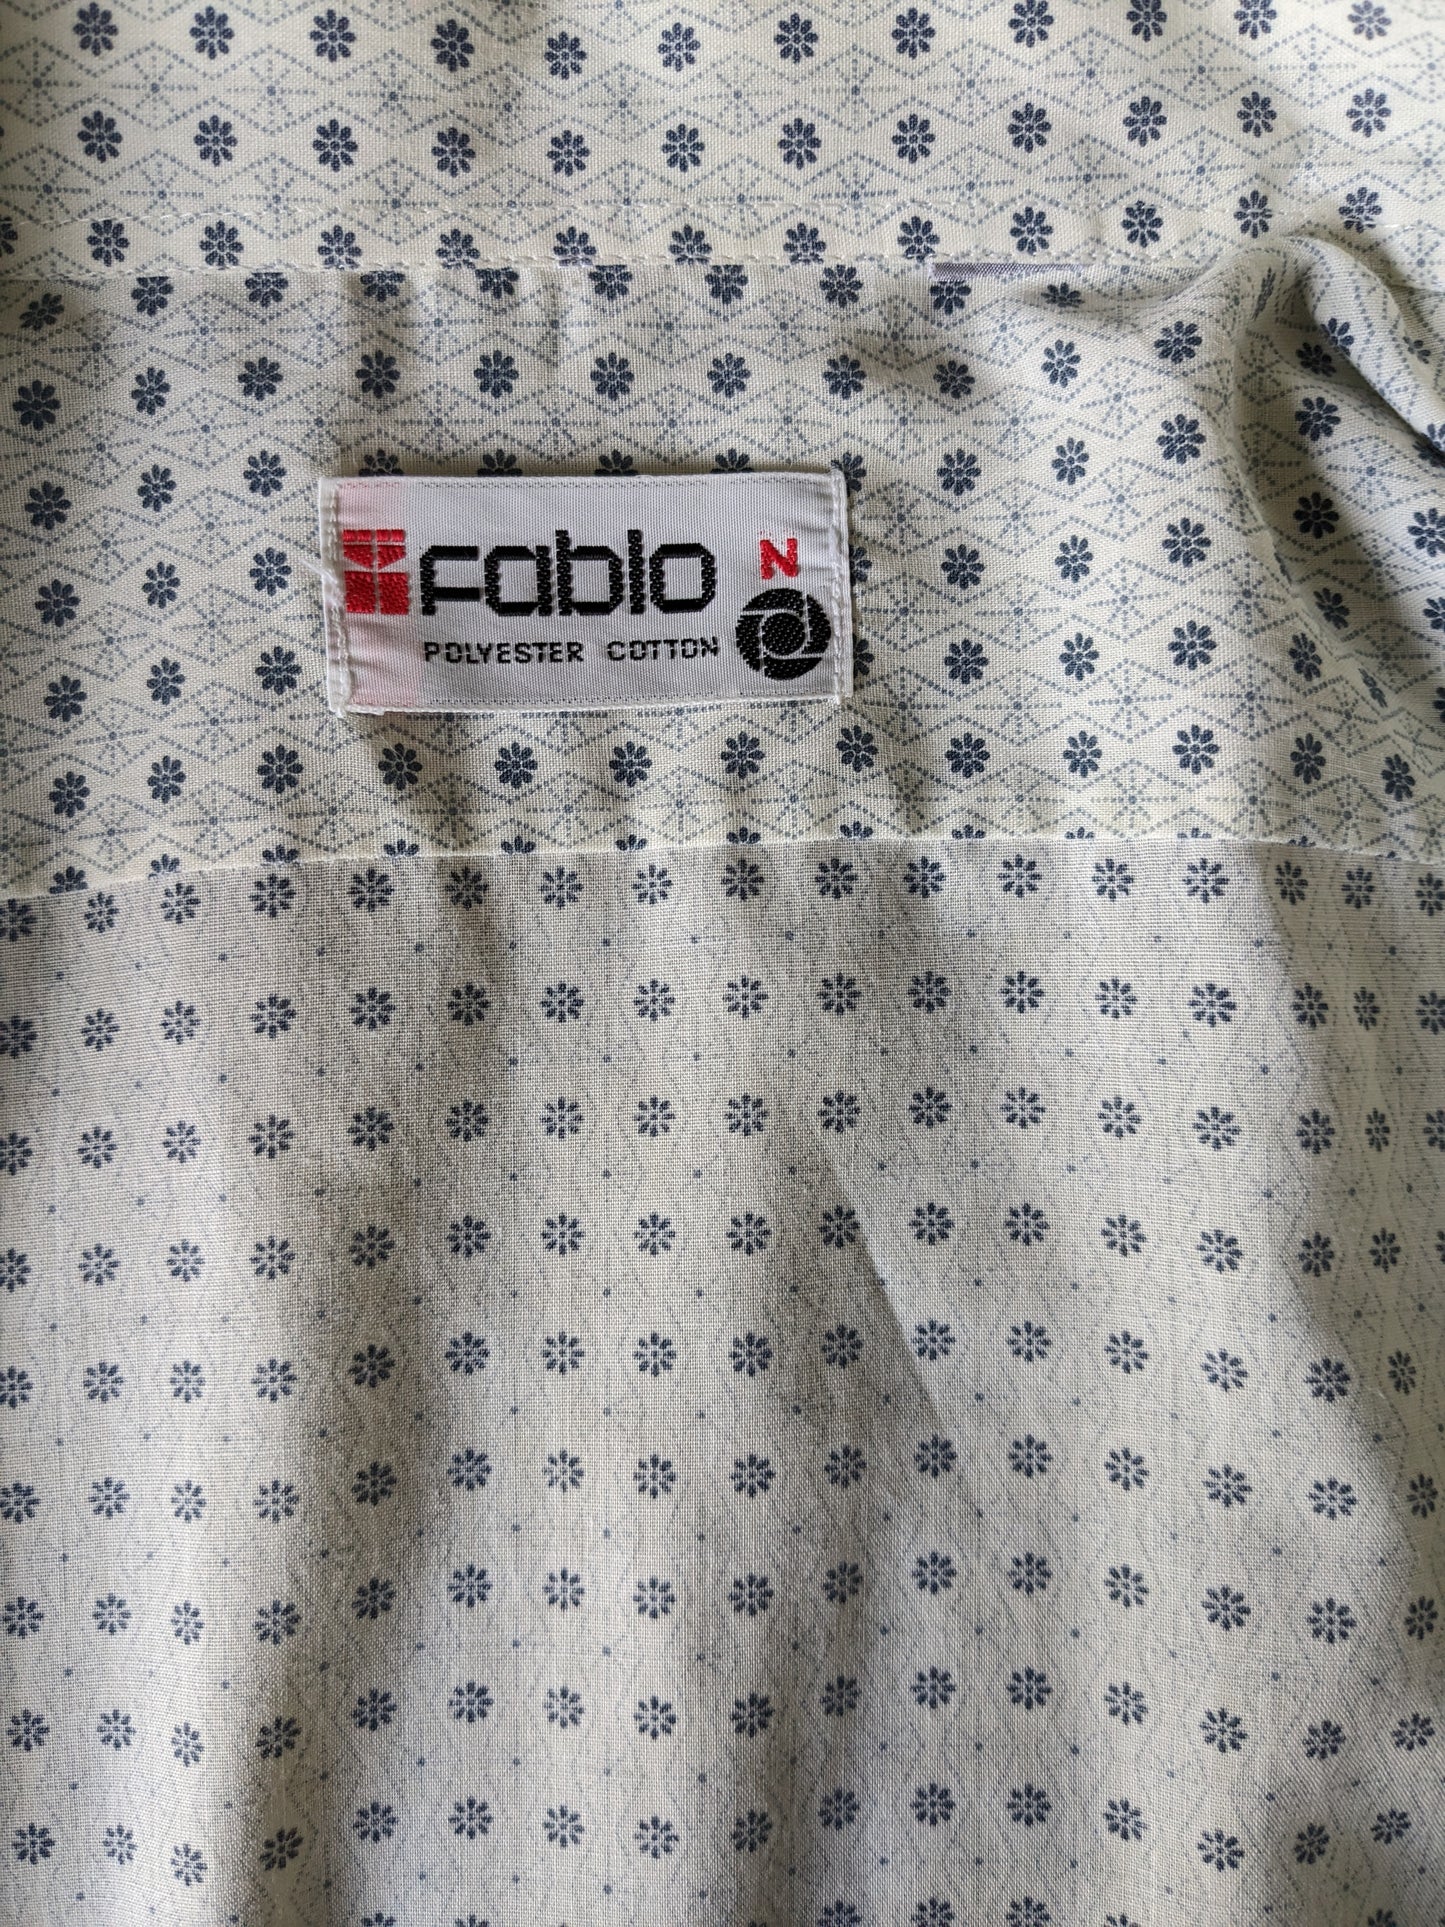 Vintage Fabio 70er Hemd mit Punktkragen. Beige grau Blumen. Größe xl.